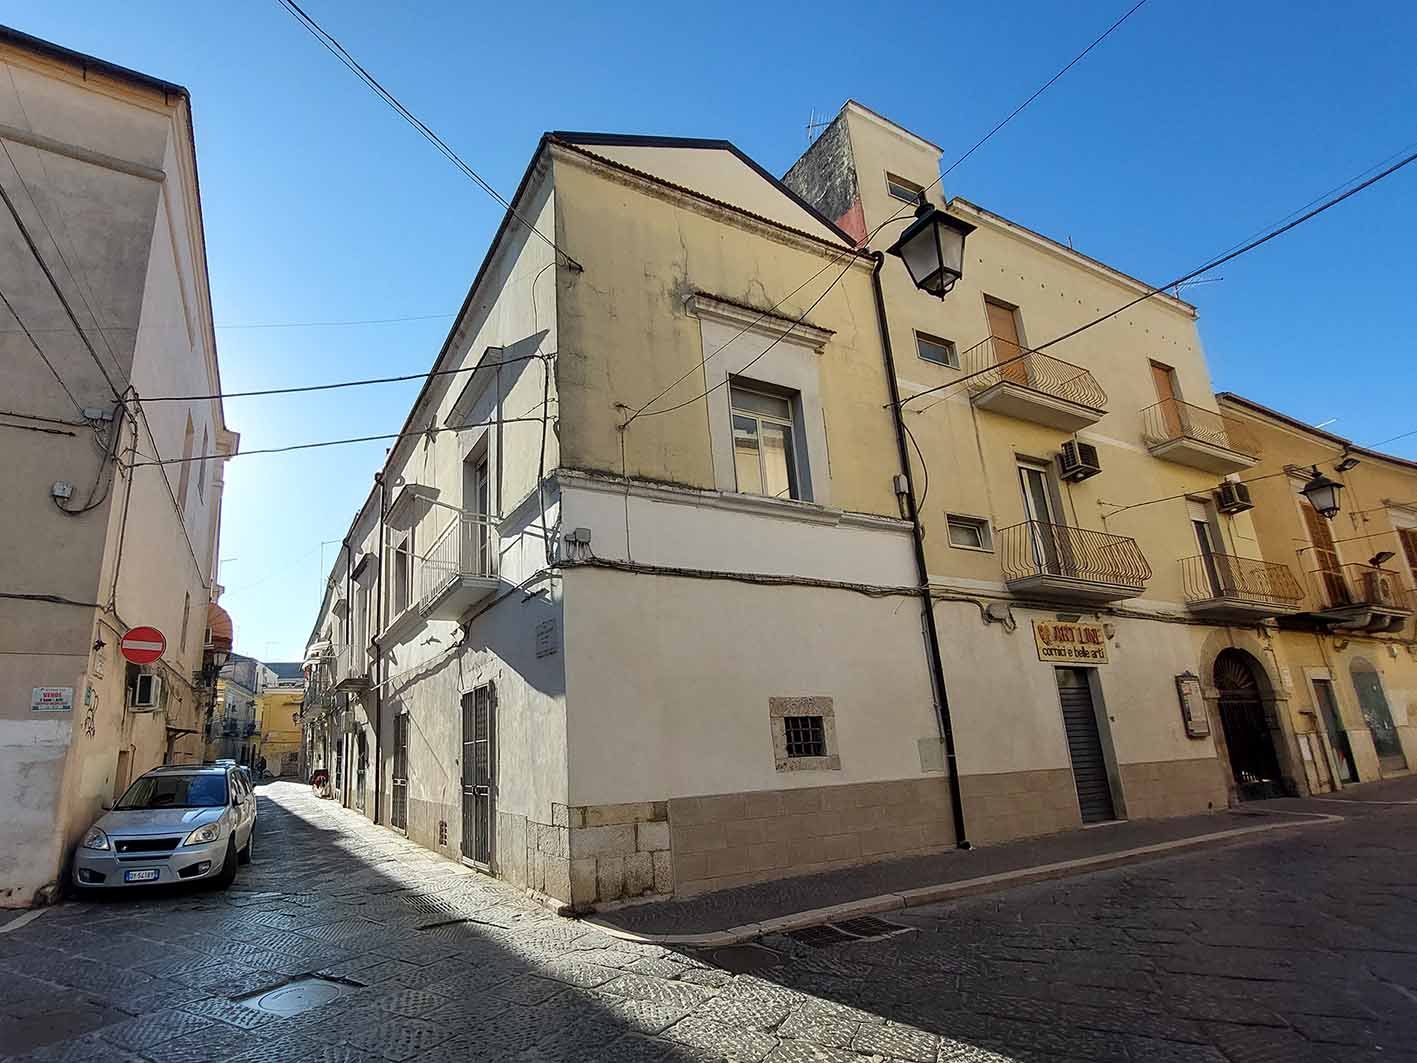 Palazzo Belvedere (palazzo, plurifamiliare) - Foggia (FG) 